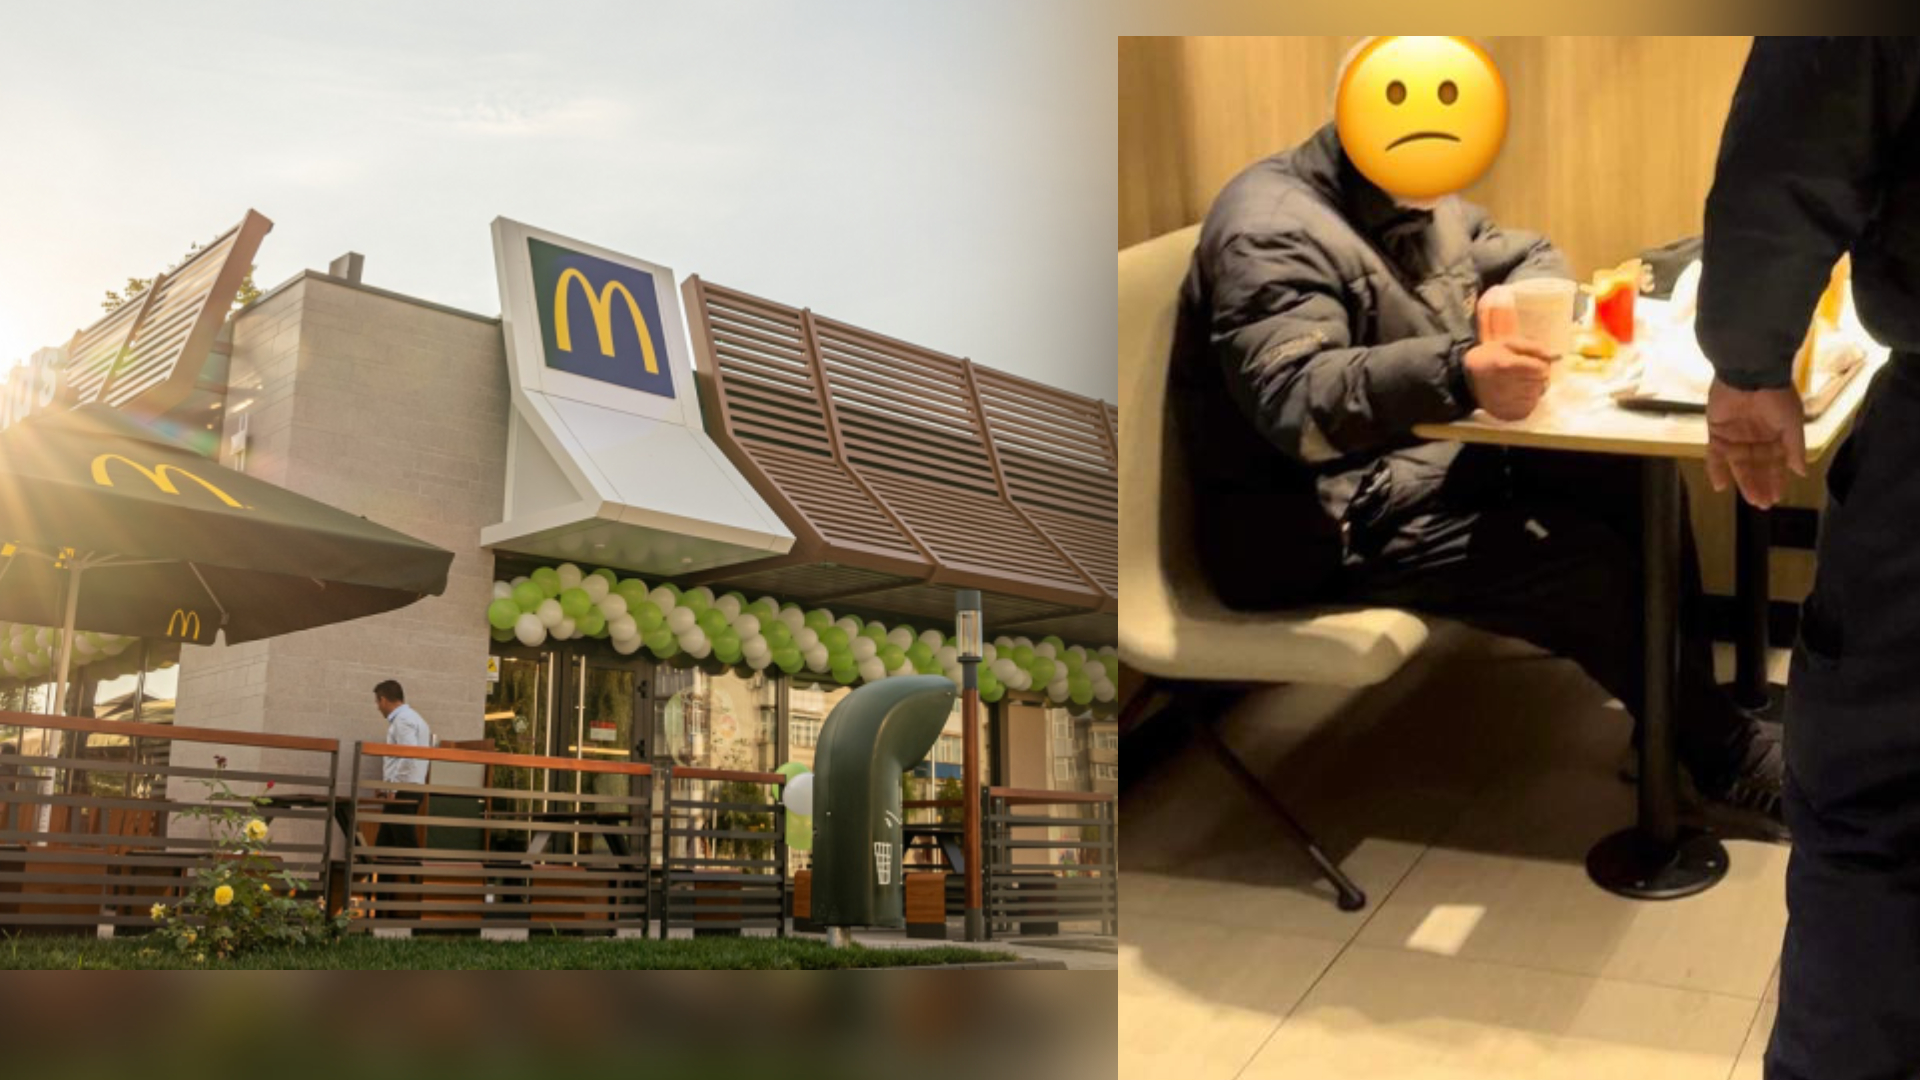 O nouă mizerie marca McDonald’s: A dat afară un bătrân din restaurant